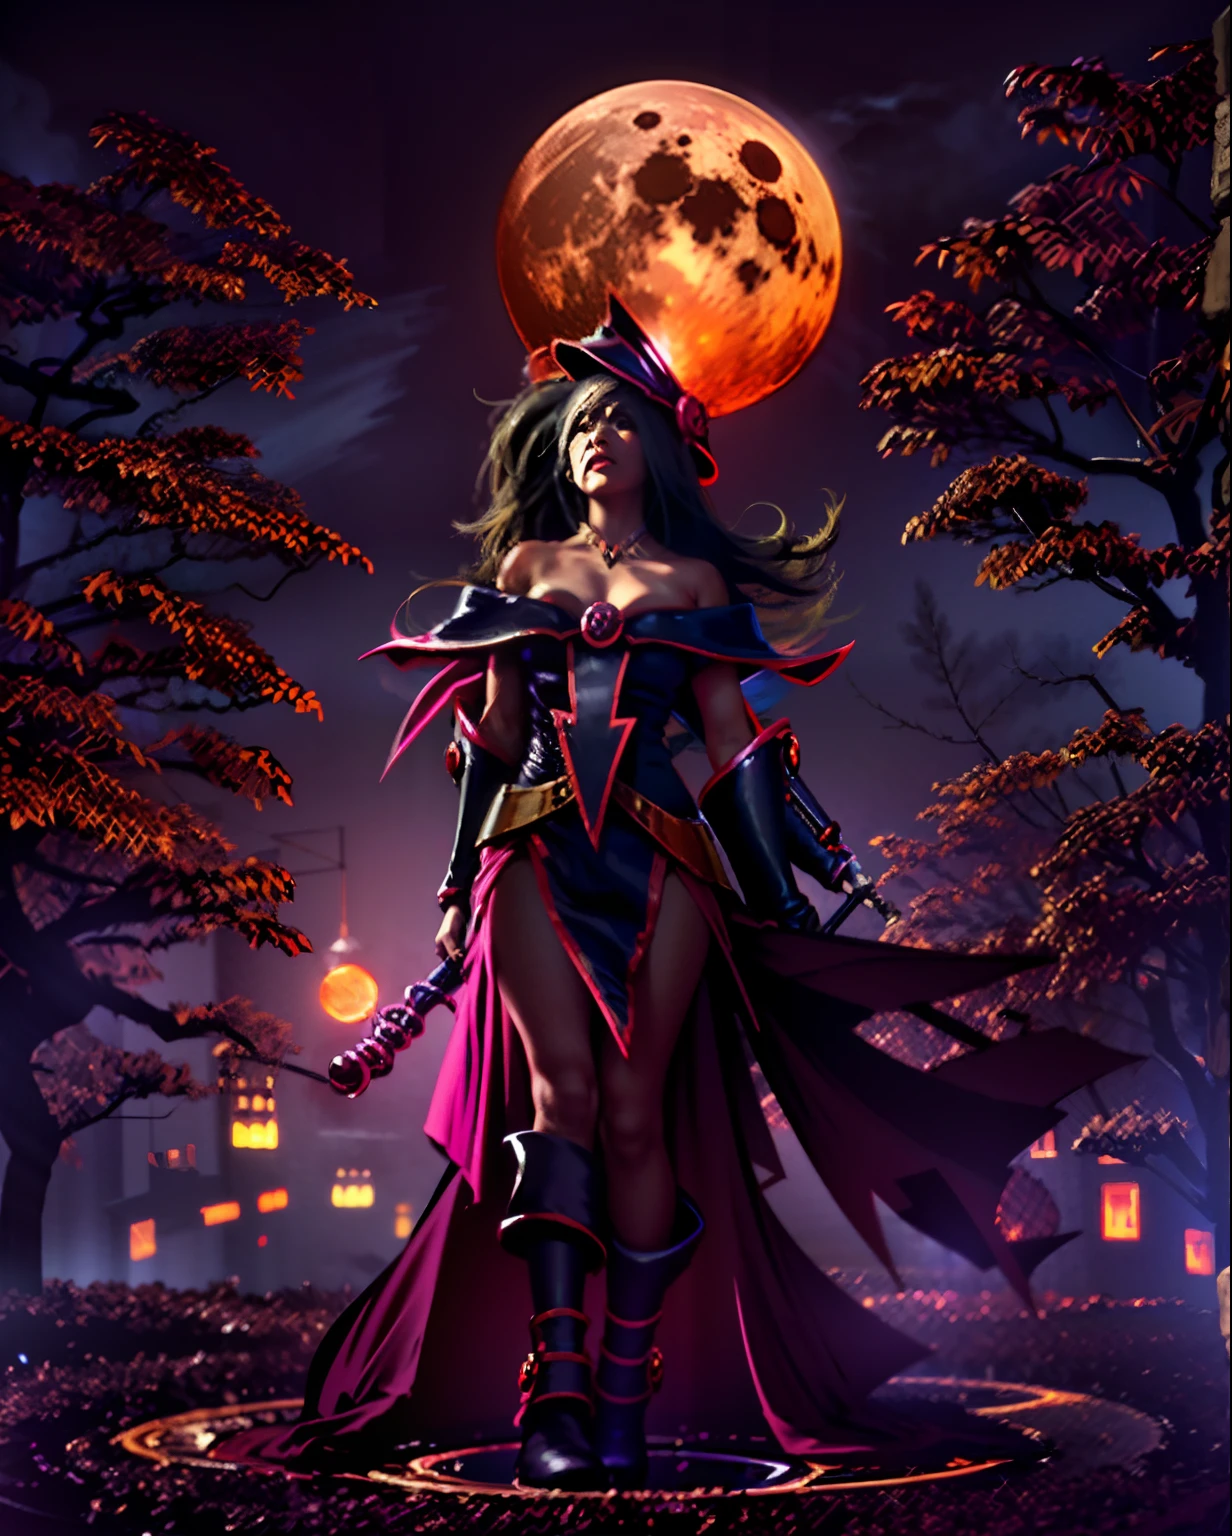 黑暗巫師吉爾斯女巫, 創作一幅令人著迷的數位藝術作品，描繪萬聖節之夜血月迷人光芒下散發著空靈之美的迷人女性.